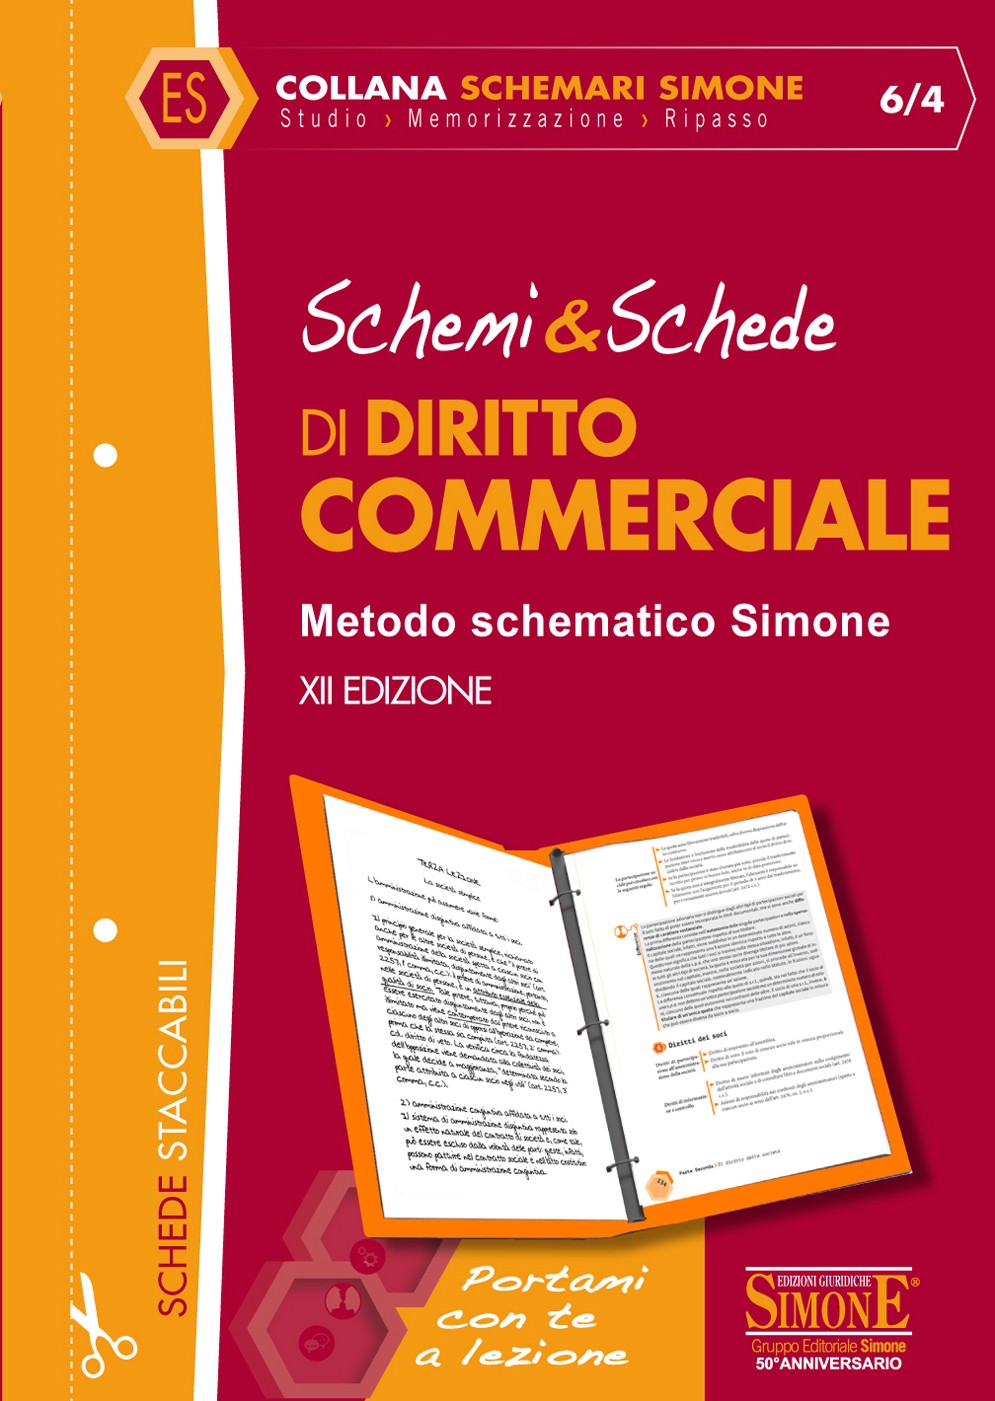 Schemi & Schede di Diritto Commerciale - Versione pdf